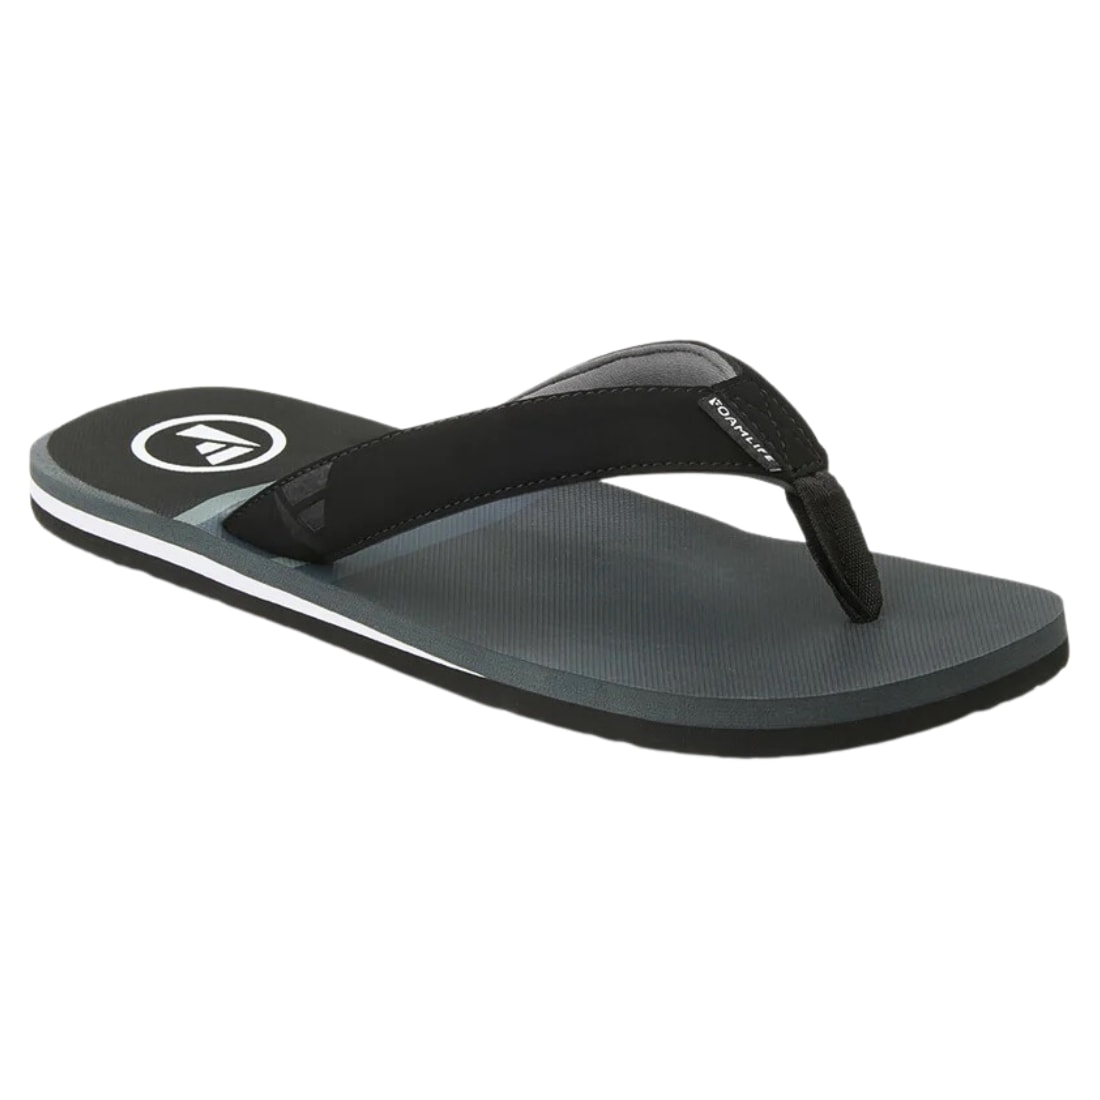 Foamlife Rullen SC Flip Flop Sandals - Slate Grey - Mens Flip Flops by FoamLife